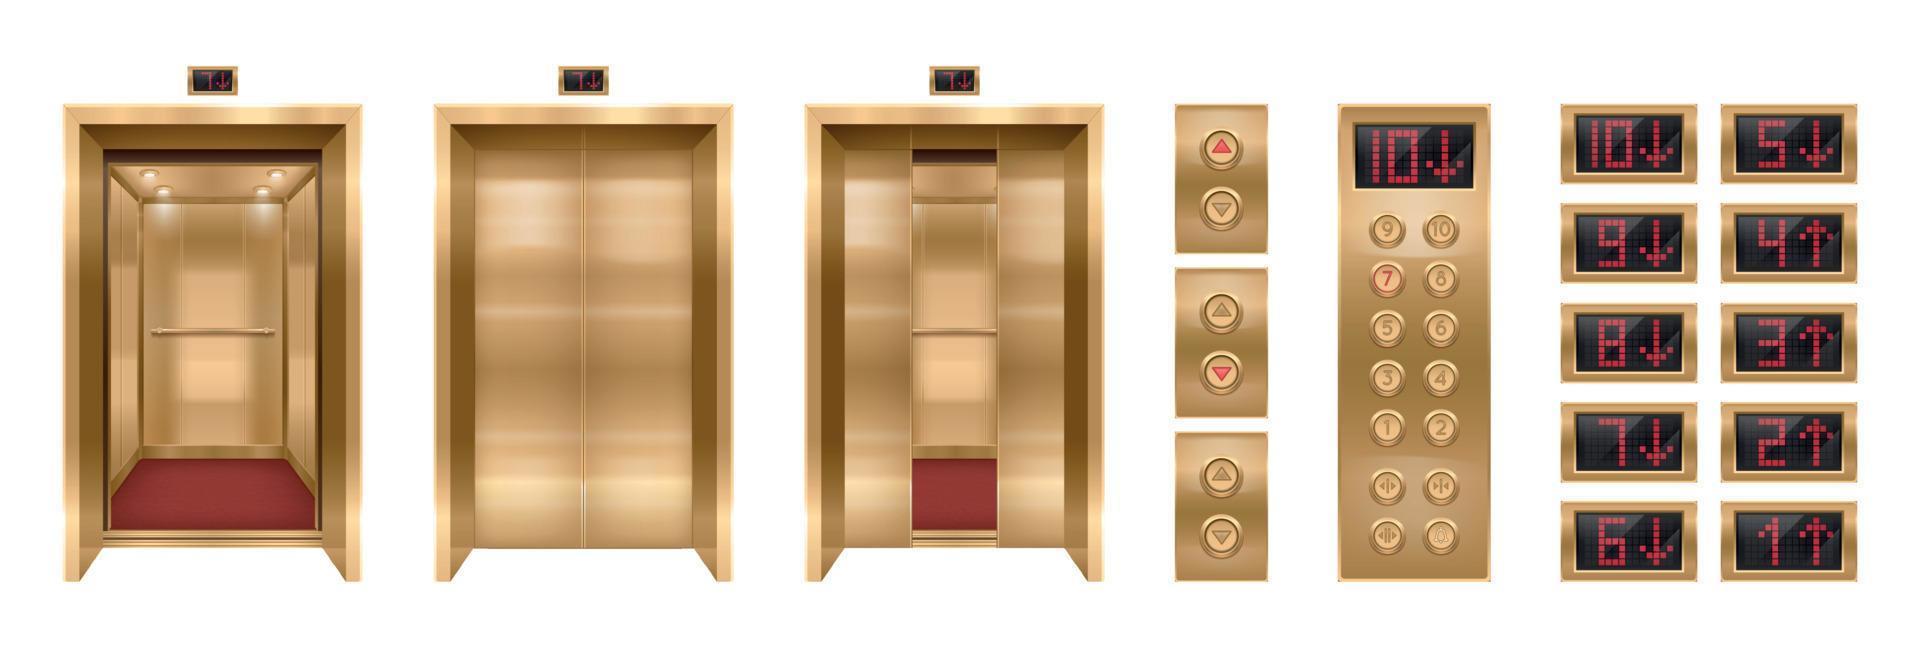 colección de elementos de ascensor de lujo vector